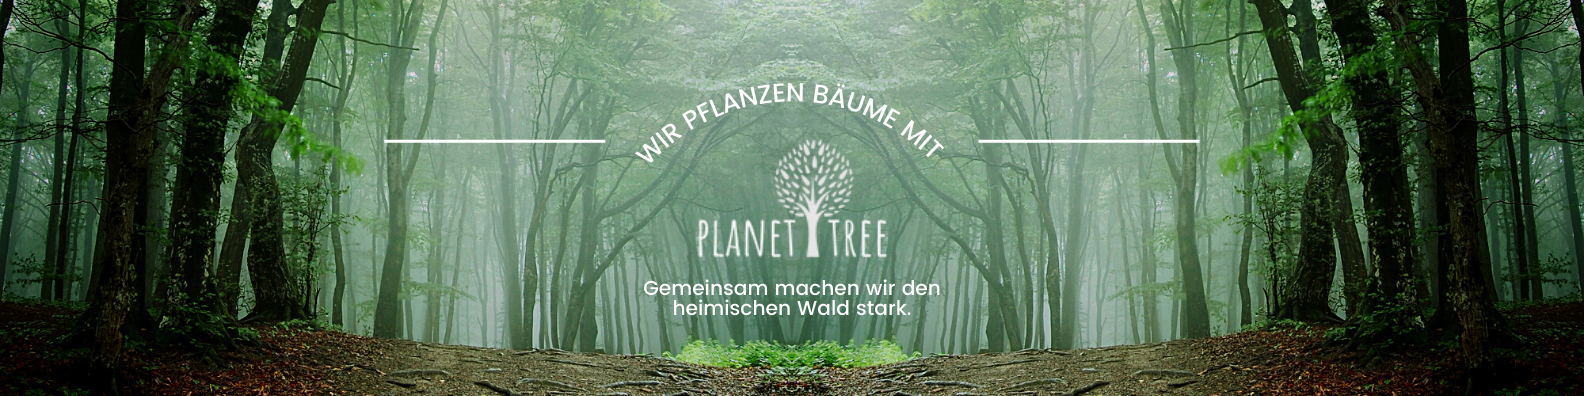 Gemeinsam machen wir den heimischen Wald stark!